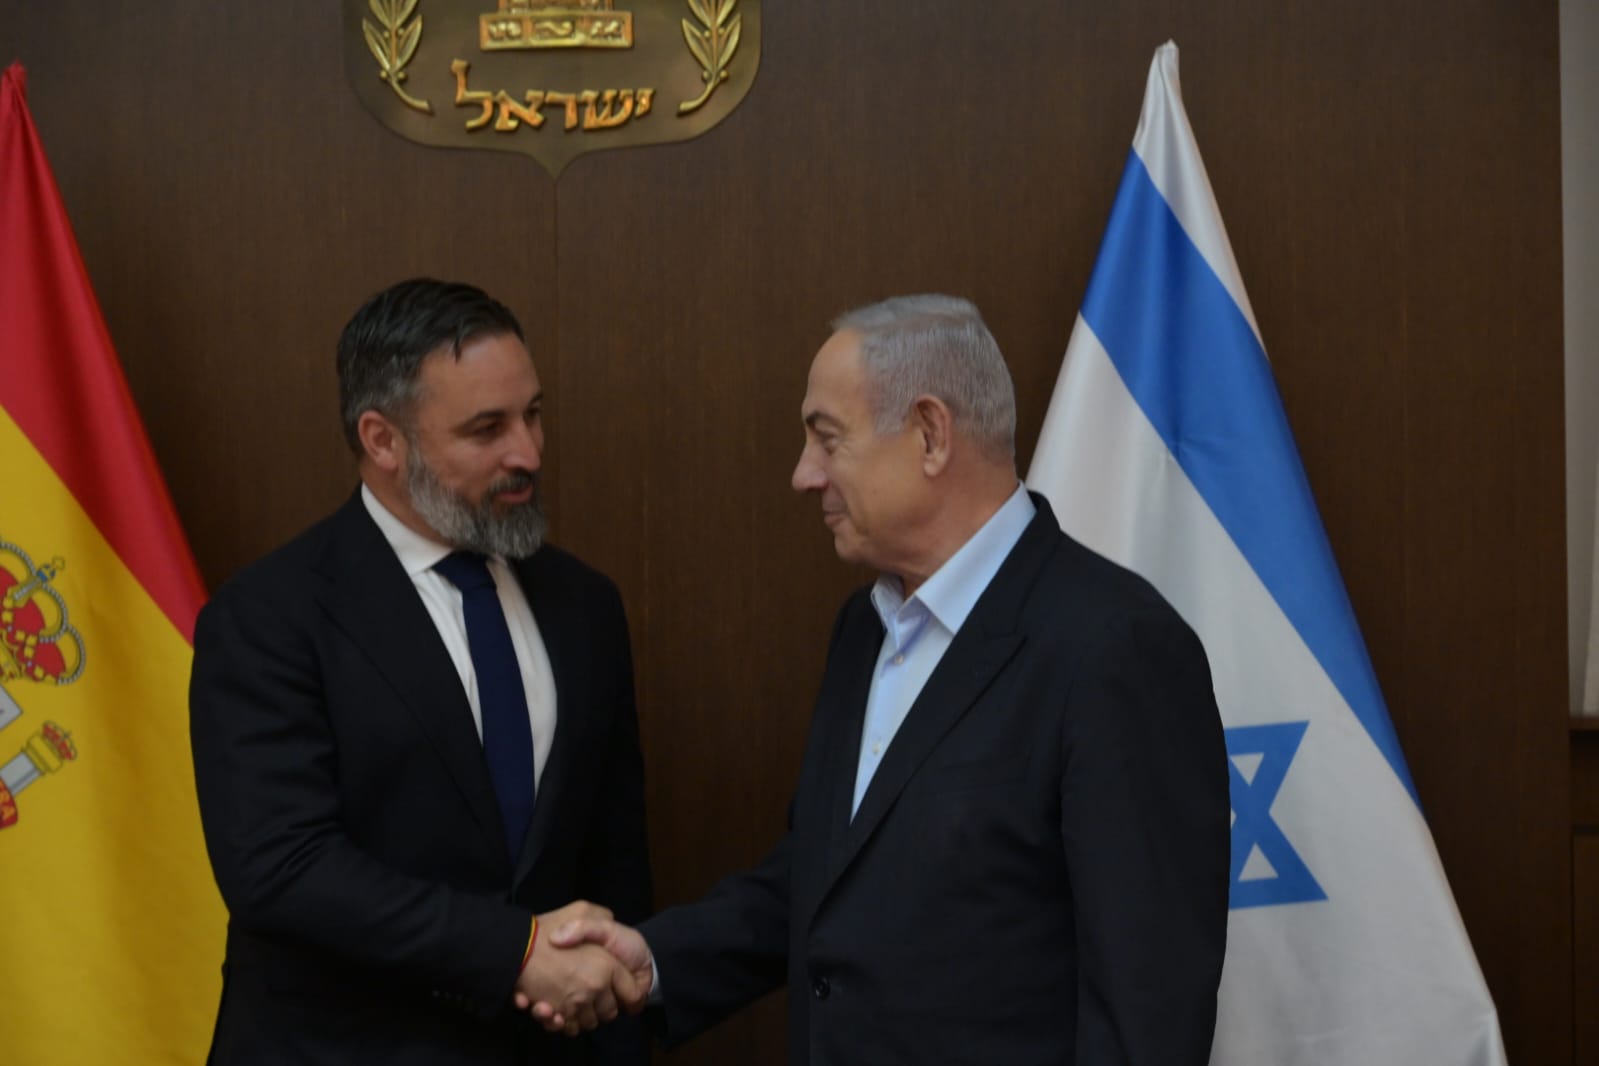 Abascal estreny la mà de Netanyahu